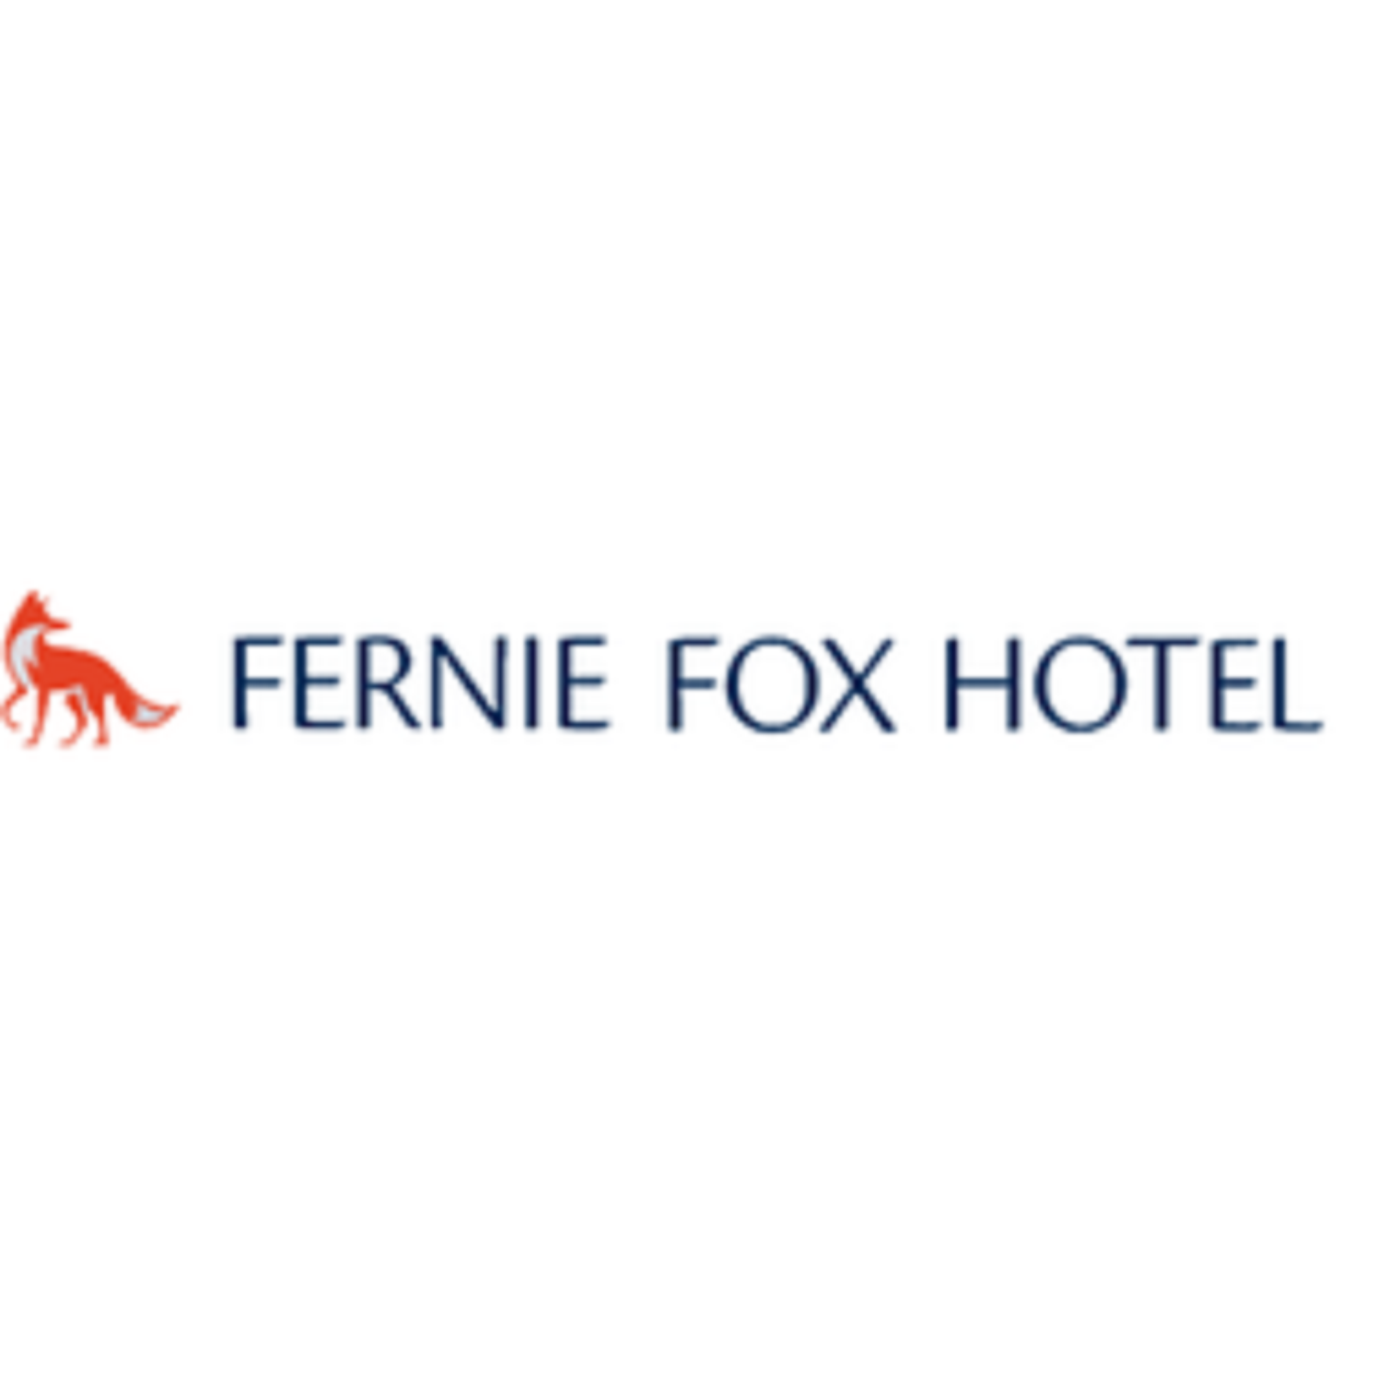 Fernie Fox Hotel